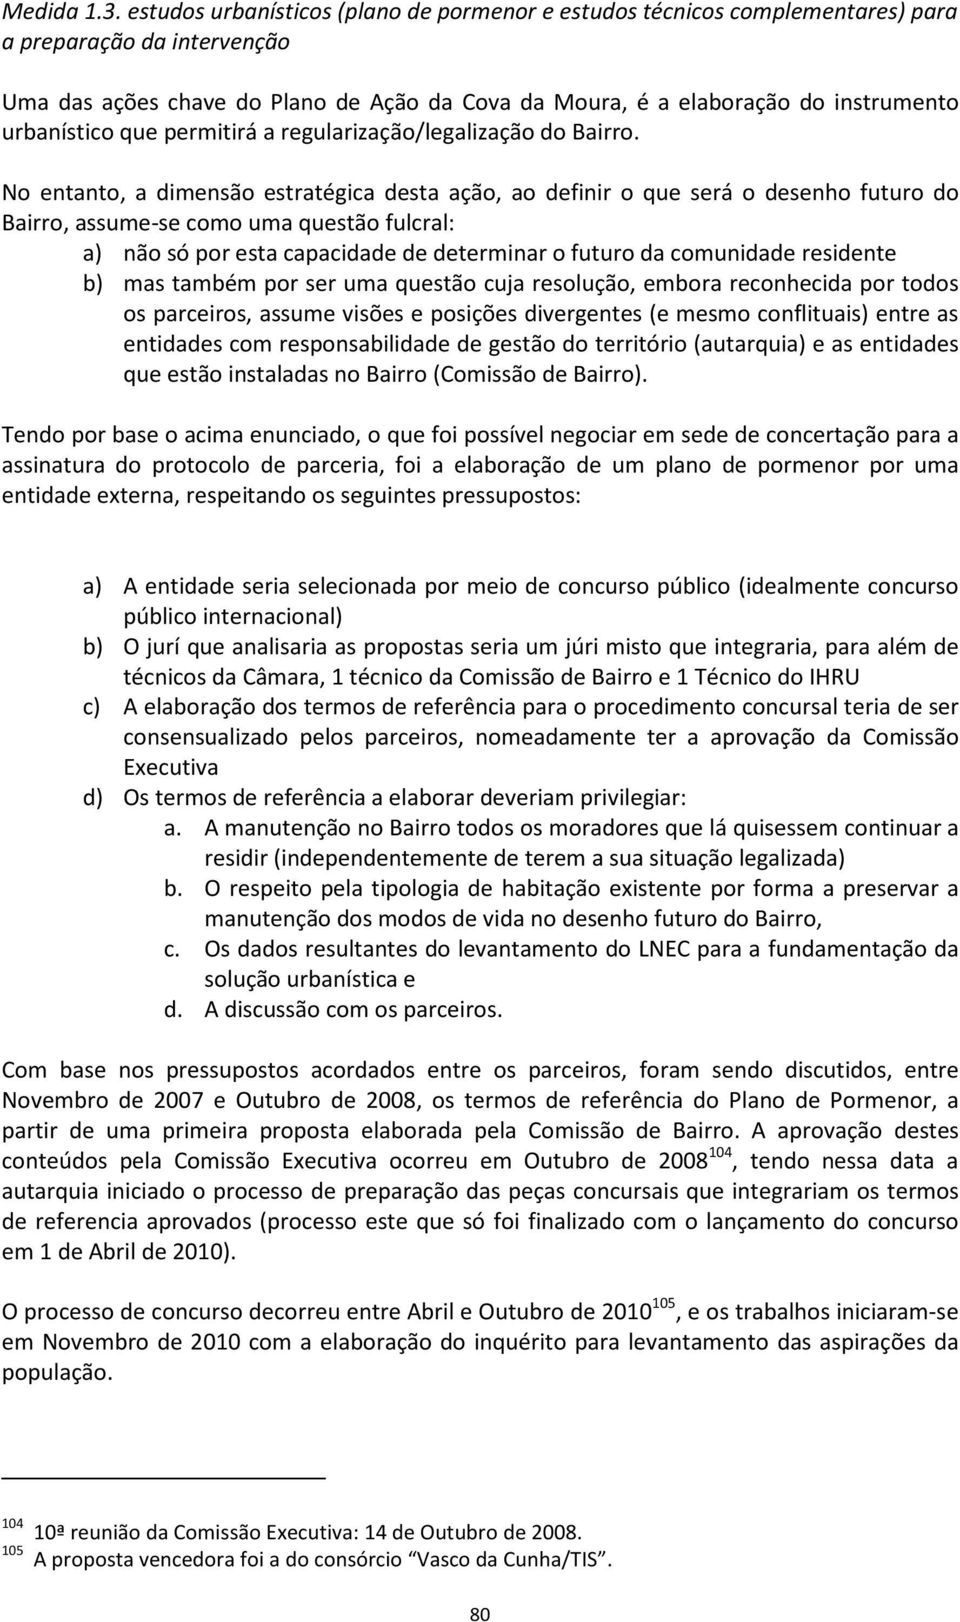 urbanístico que permitirá a regularização/legalização do Bairro.